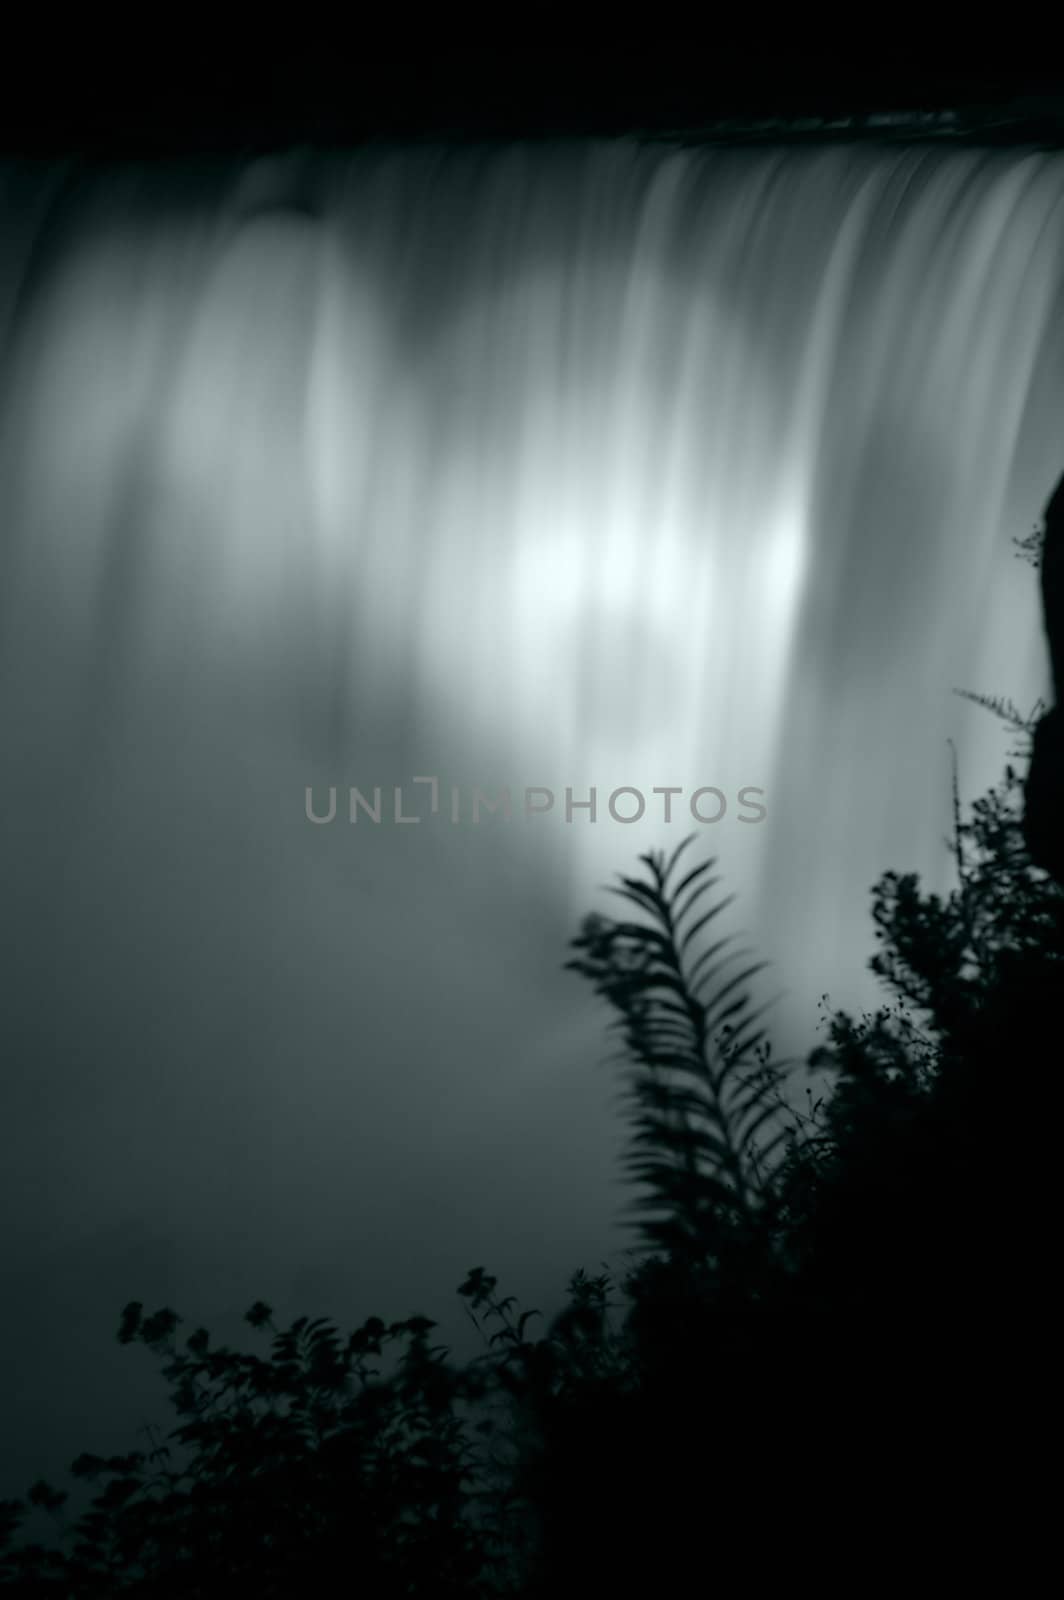 waterfalls detail photo taken at night, water is motion blured 